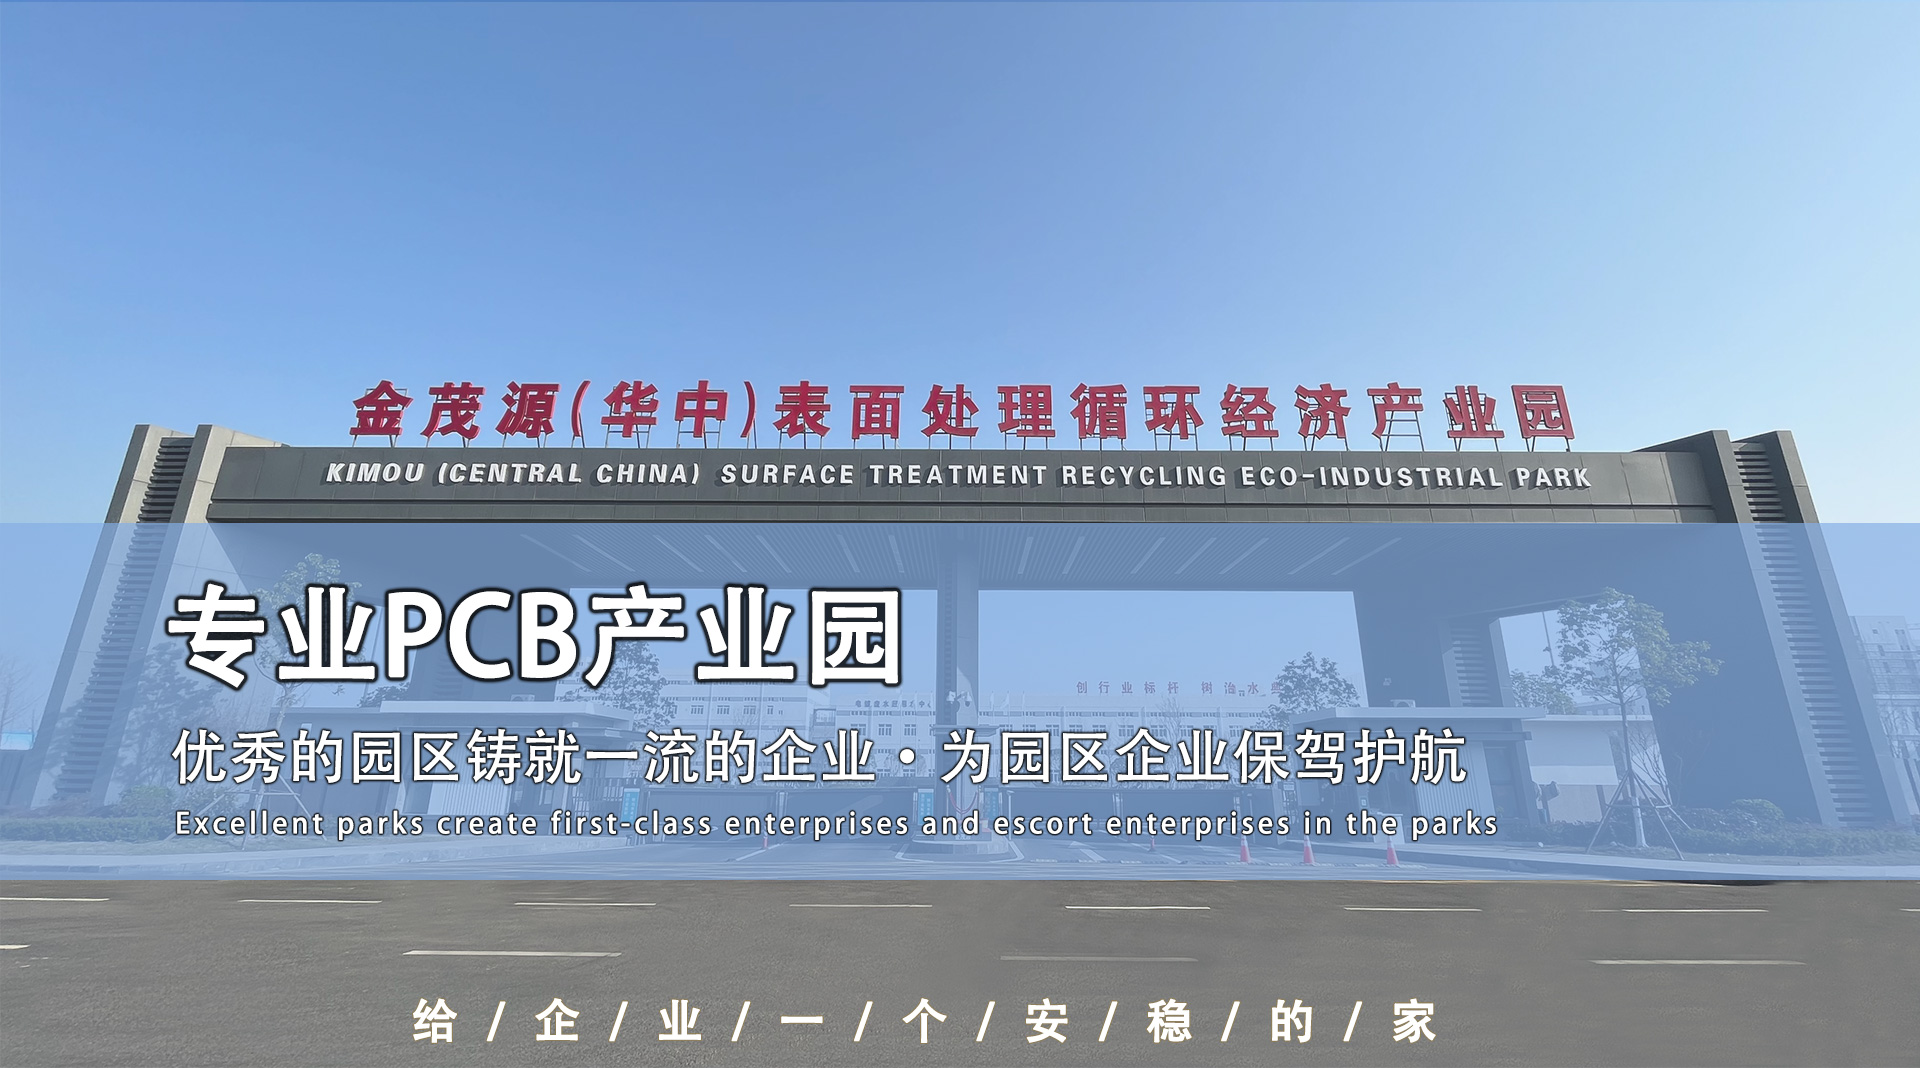 PCB工业园厂房|pcb线路板加工|华中pcb产业园厂房出租